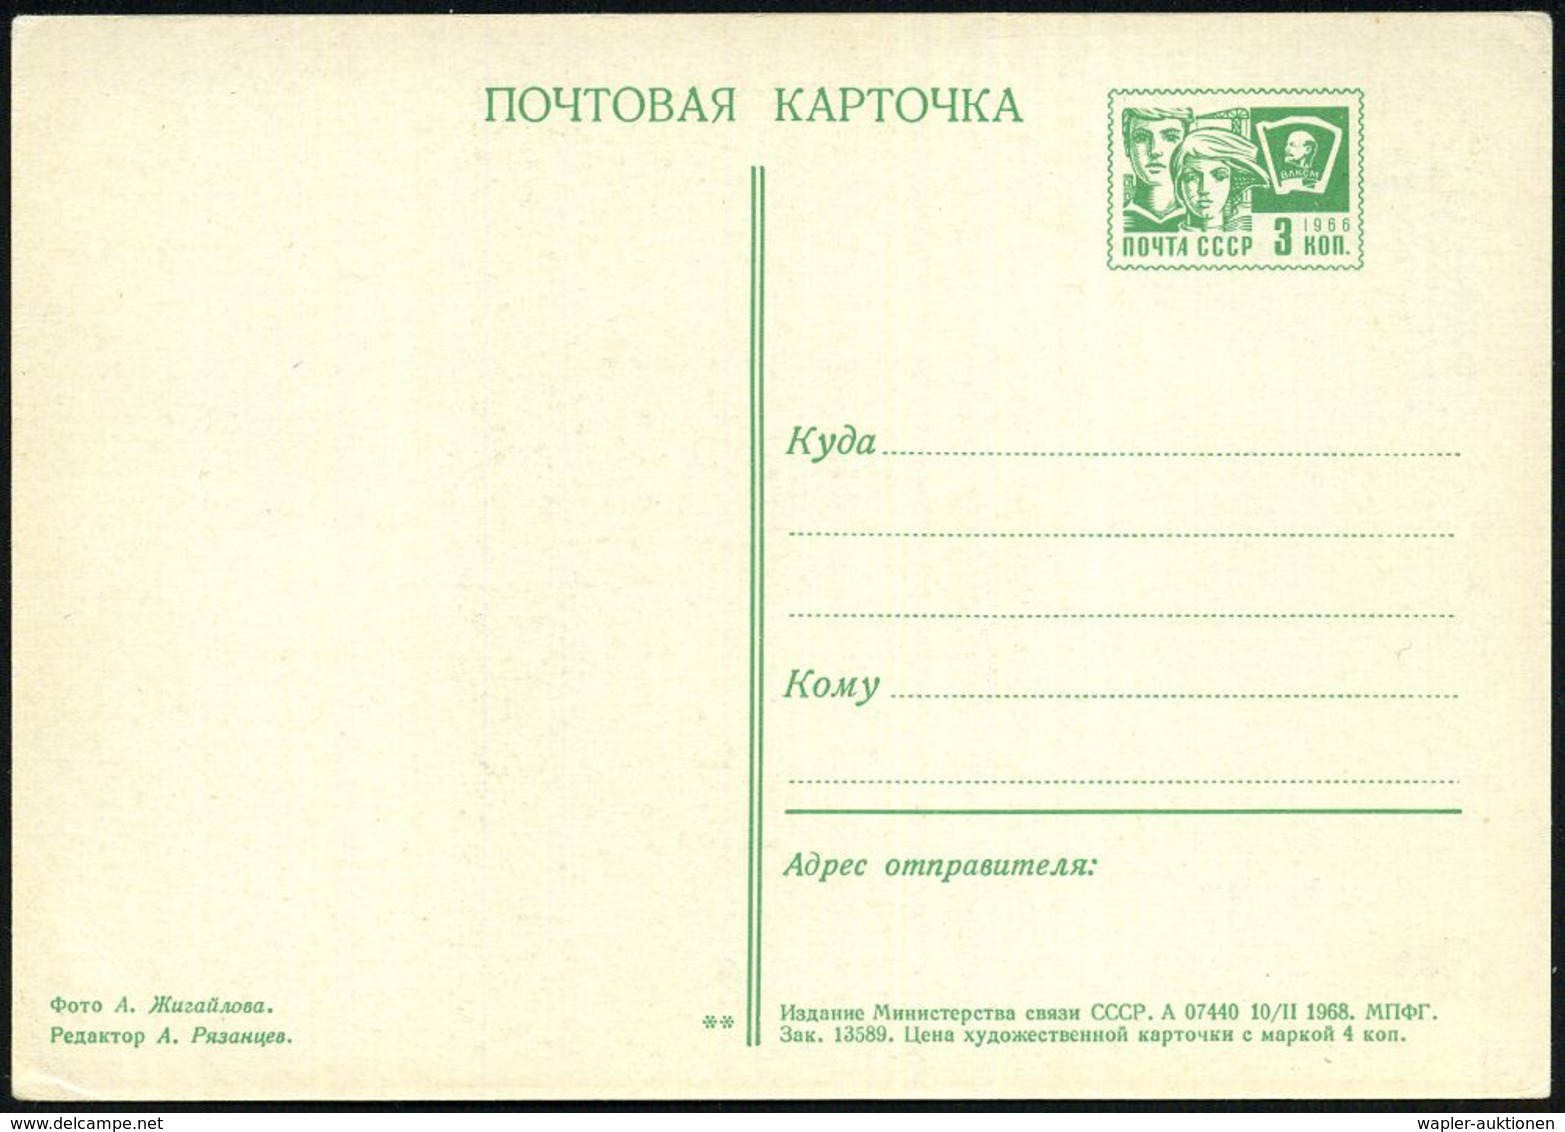 ASTRONOMIE / OBSERVATORIEN / PLANETARIEN : UdSSR 1968 3 Kop. BiP Komsomolzen , Grün: Radioteleskop "Orbita" In Novosibir - Astronomy